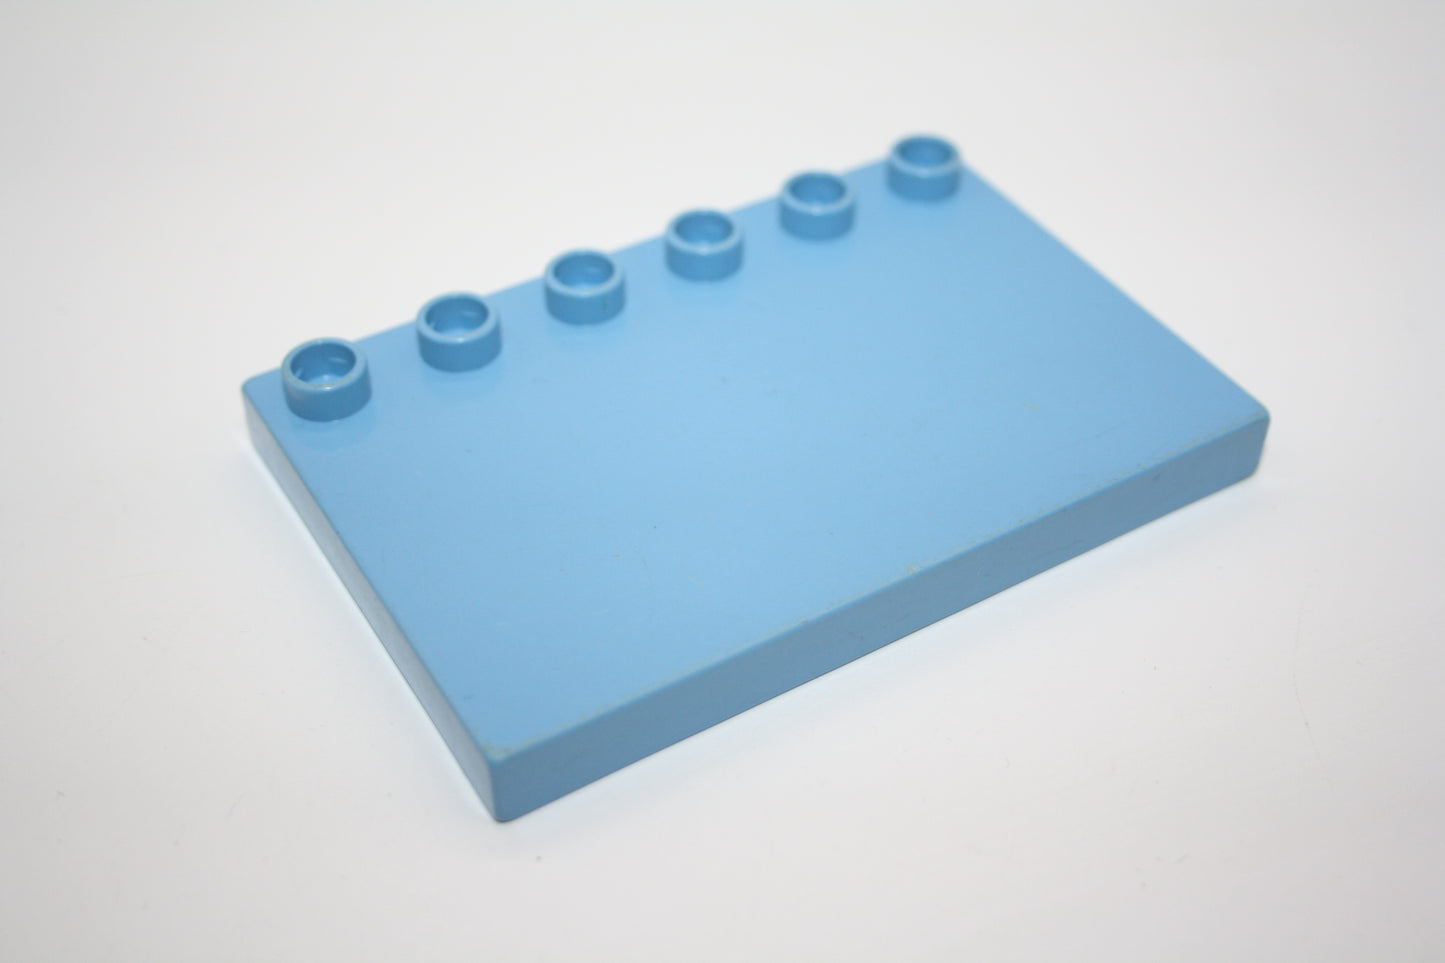 Duplo - 4x6 Platten/Dachplatten  - versch. Farben - Bauplatten - Grundplatten